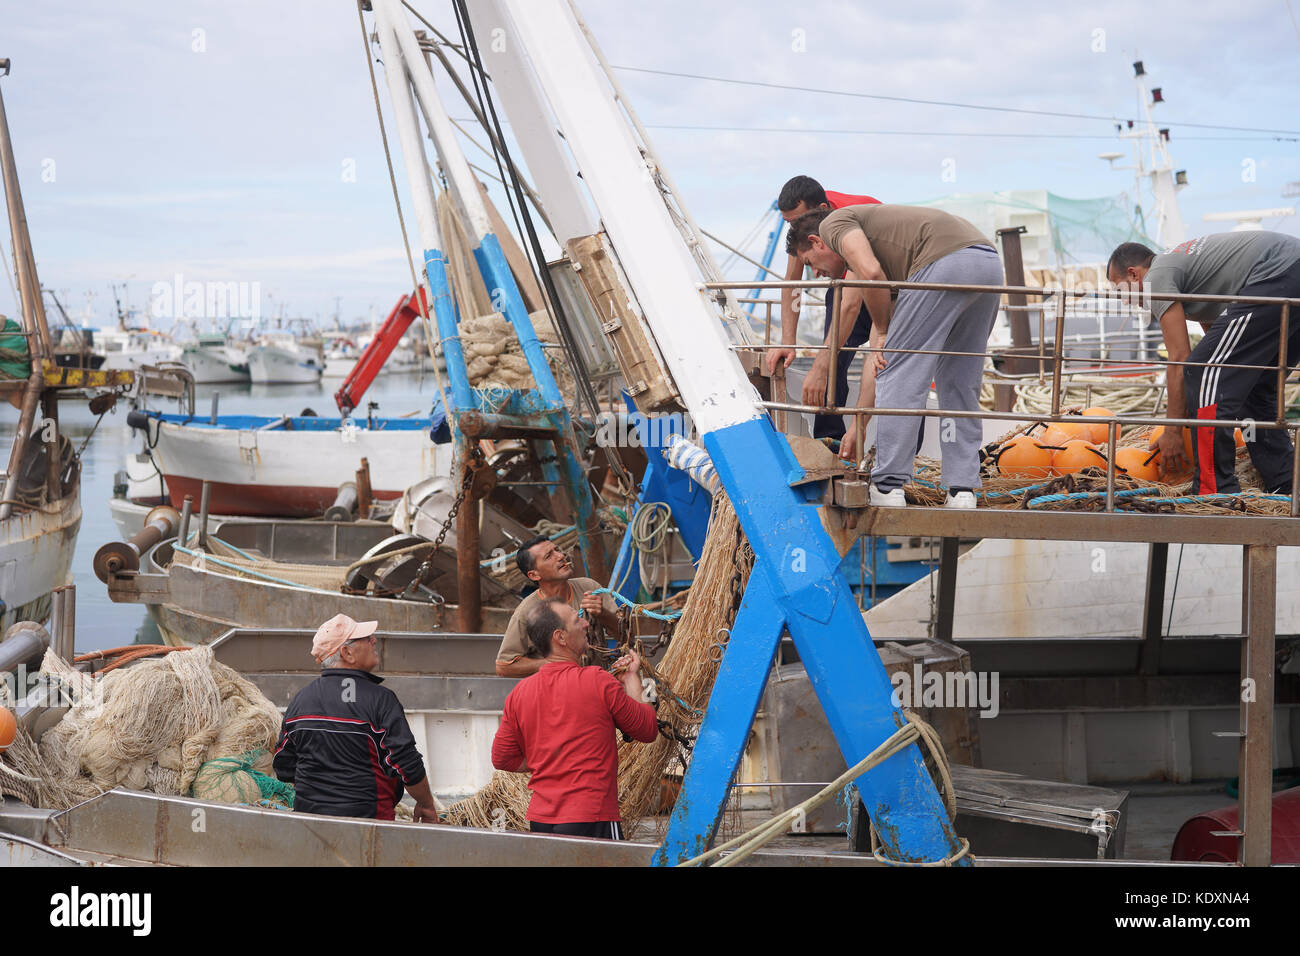 Les pêcheurs réparant leurs filets pendant un mois de blocus dans le port de pêche de Sciacca. à partir d'une série de photos de voyage en Sicile, Italie. photo Date : mar Banque D'Images